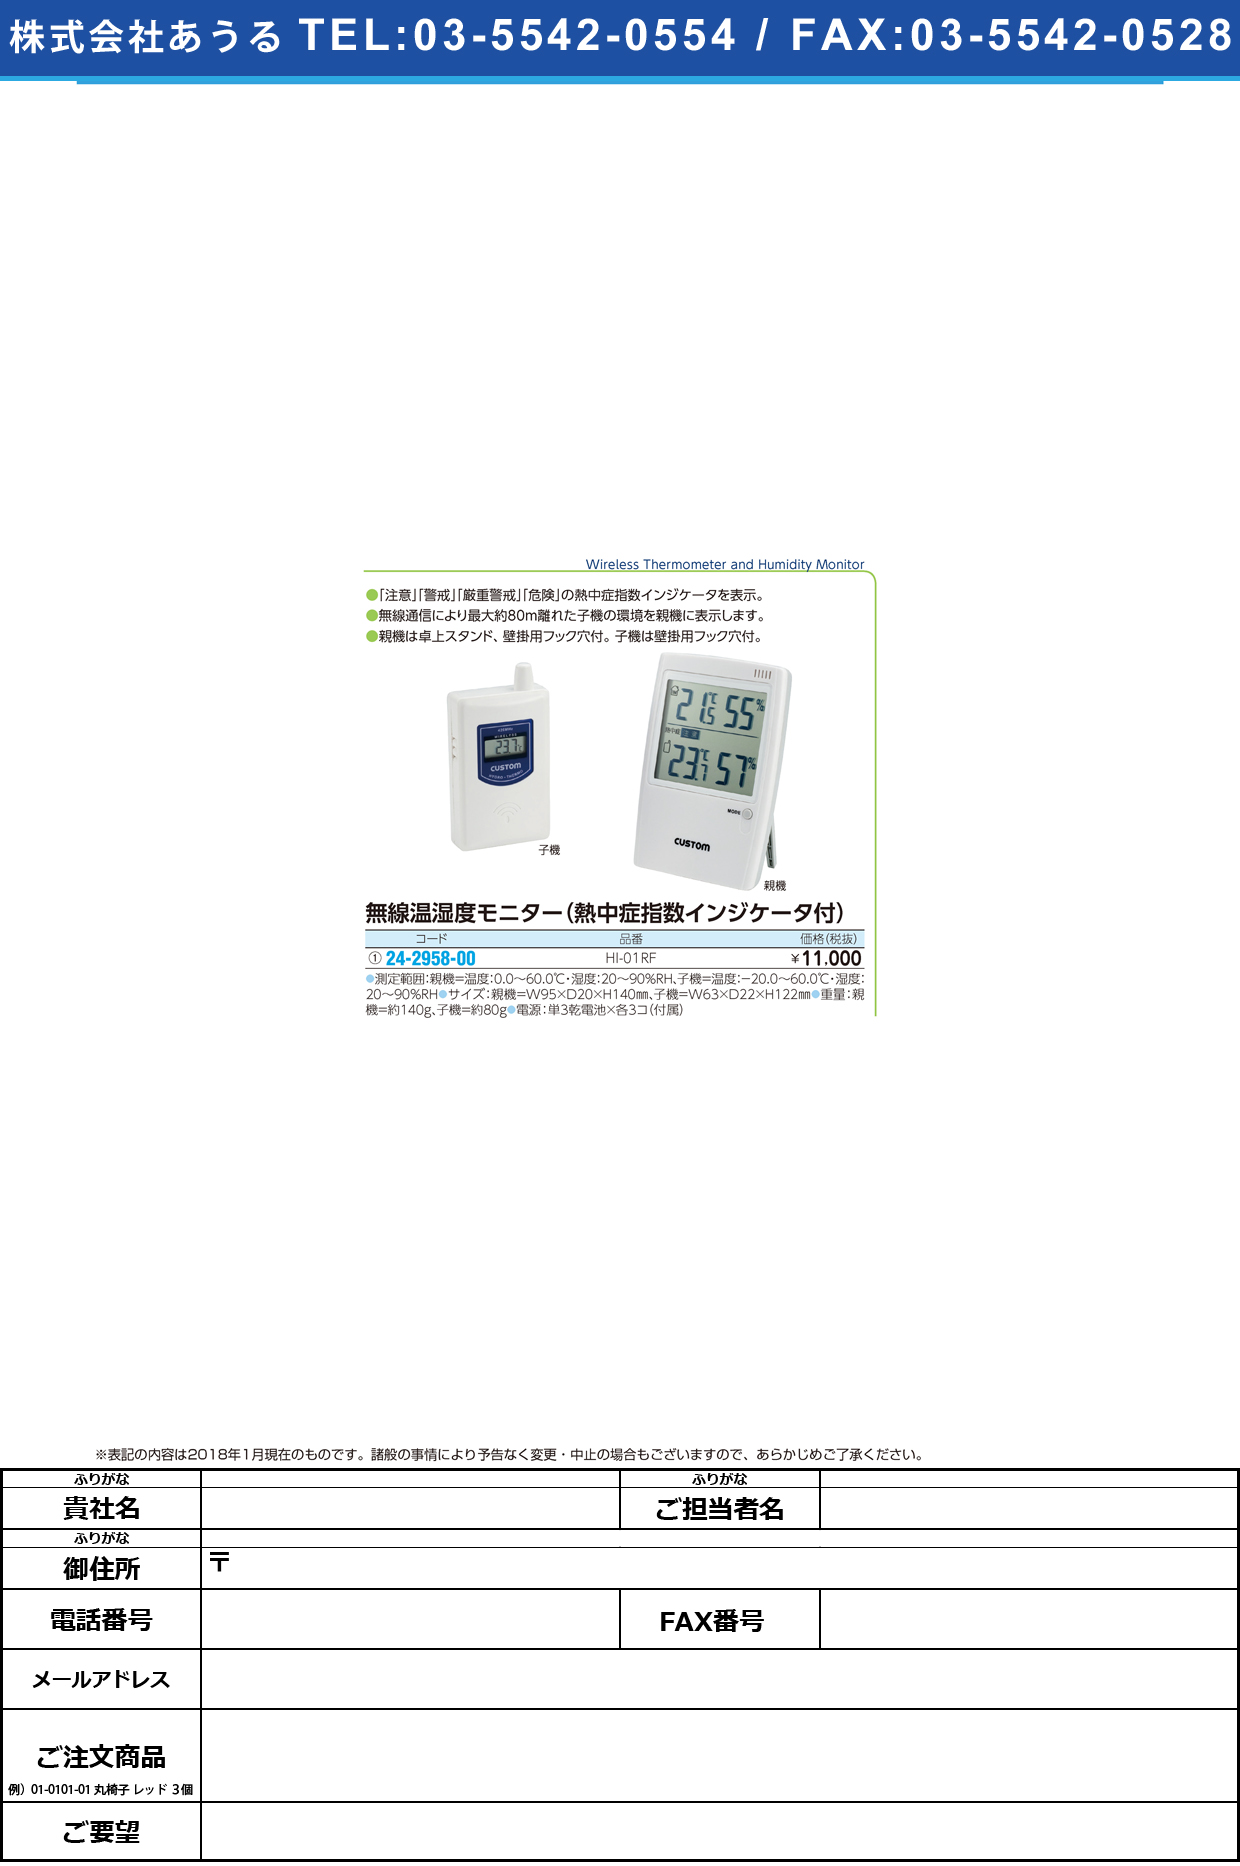 (24-2958-00)無線温湿度モニター HI-01RF ﾑｾﾝｵﾝｼﾂﾄﾞﾓﾆﾀｰ【1台単位】【2018年カタログ商品】